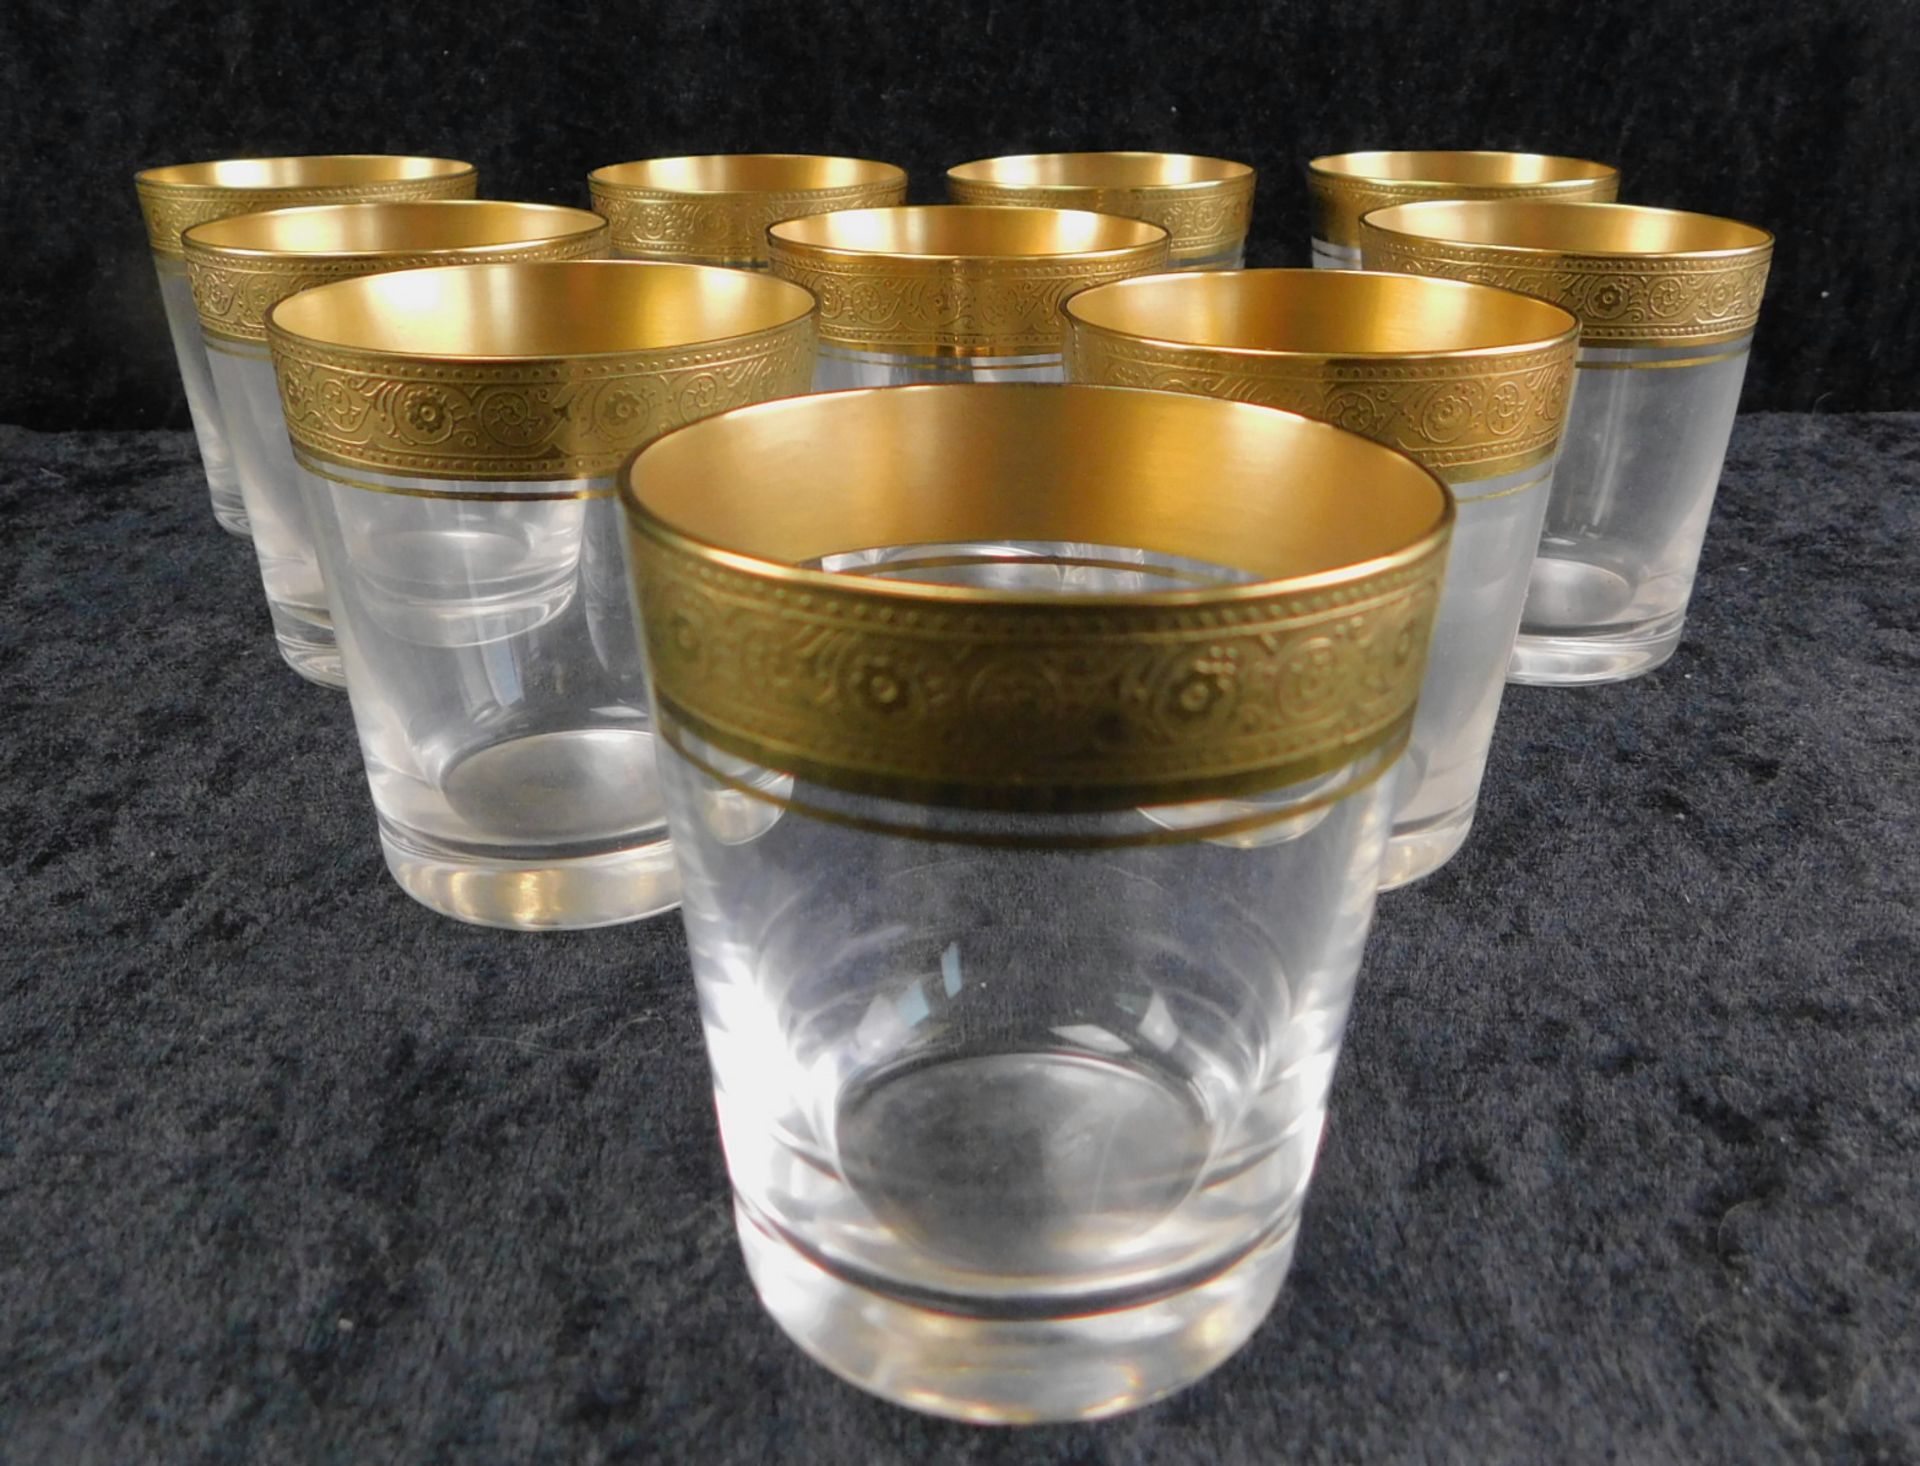 Theresienthal, 10 Gläser, Kristallglas geschliffen, Echtgold-Lippenrand, h: 7 cm, Ø 6 cm, Best